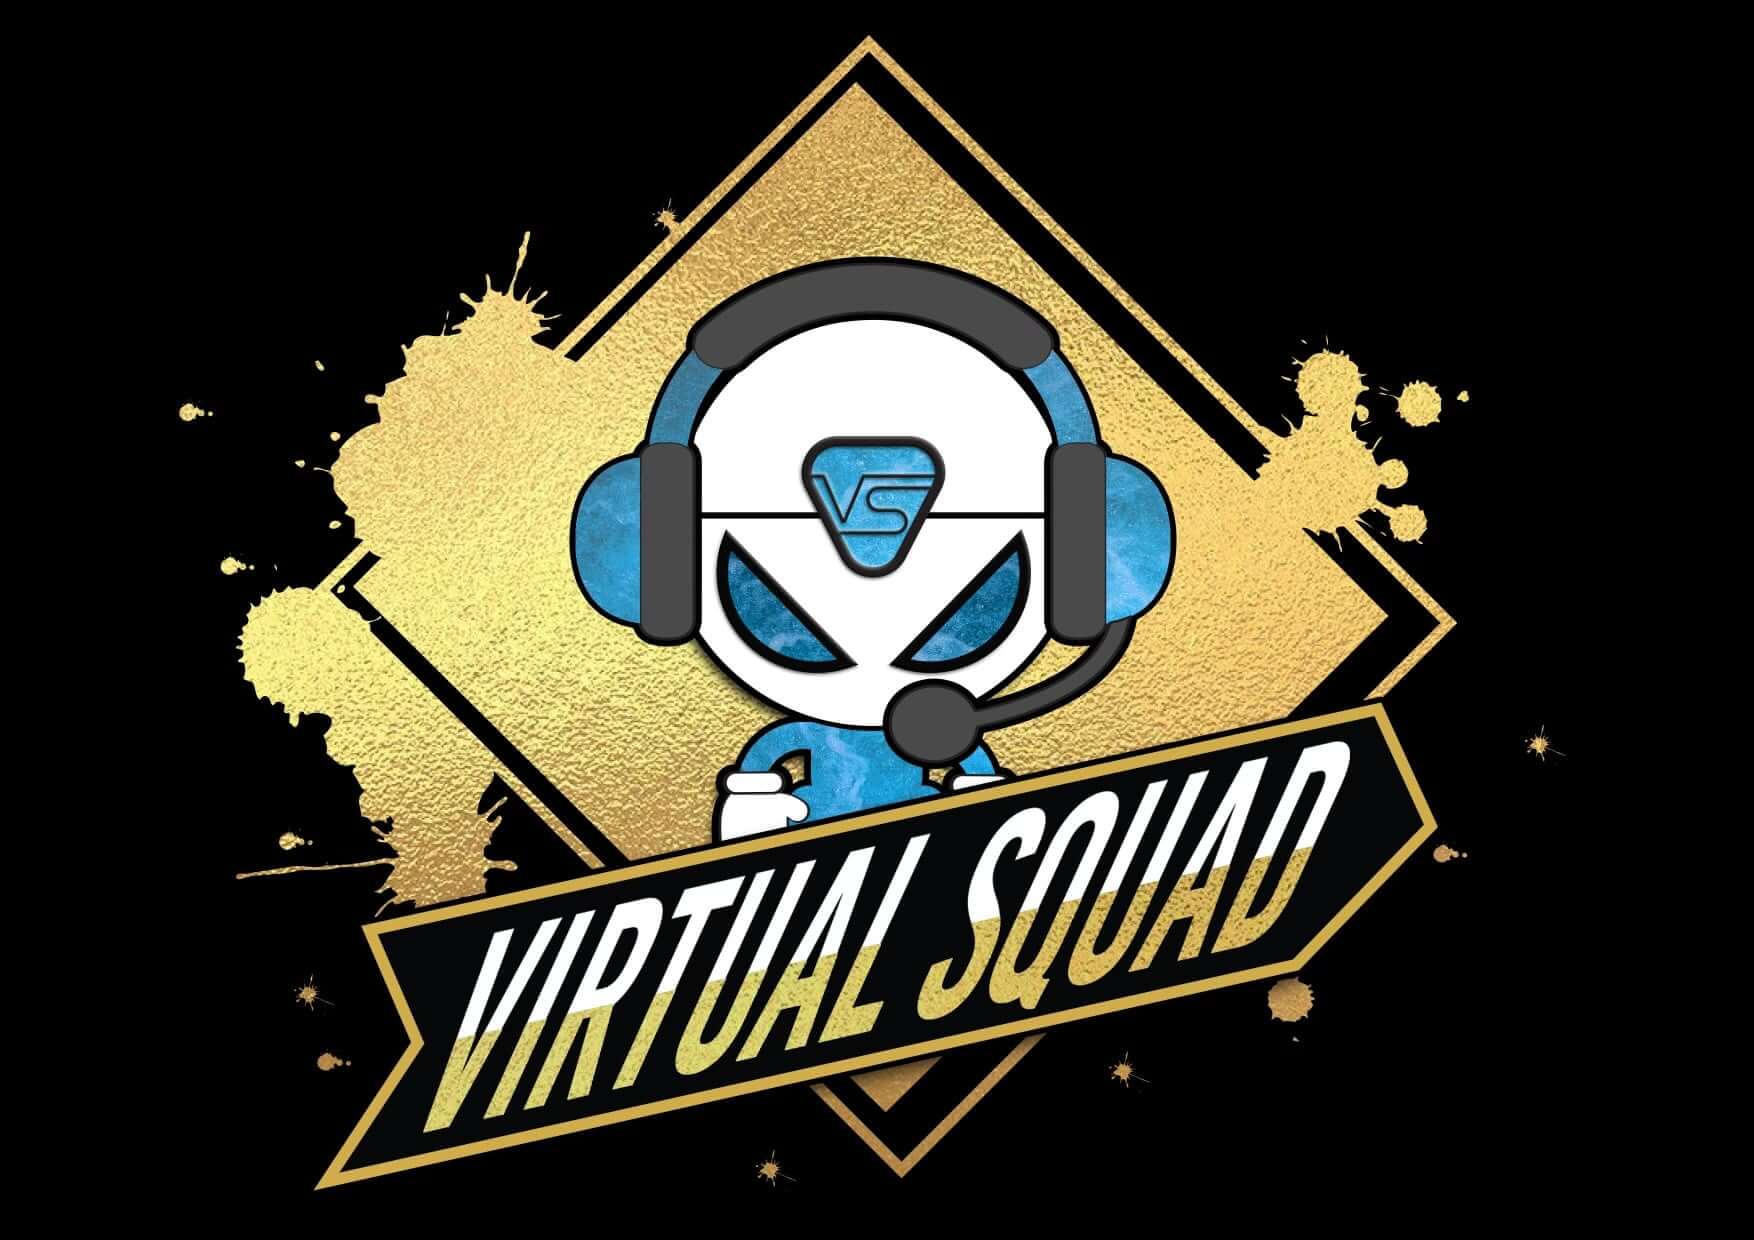 Virtual Squad